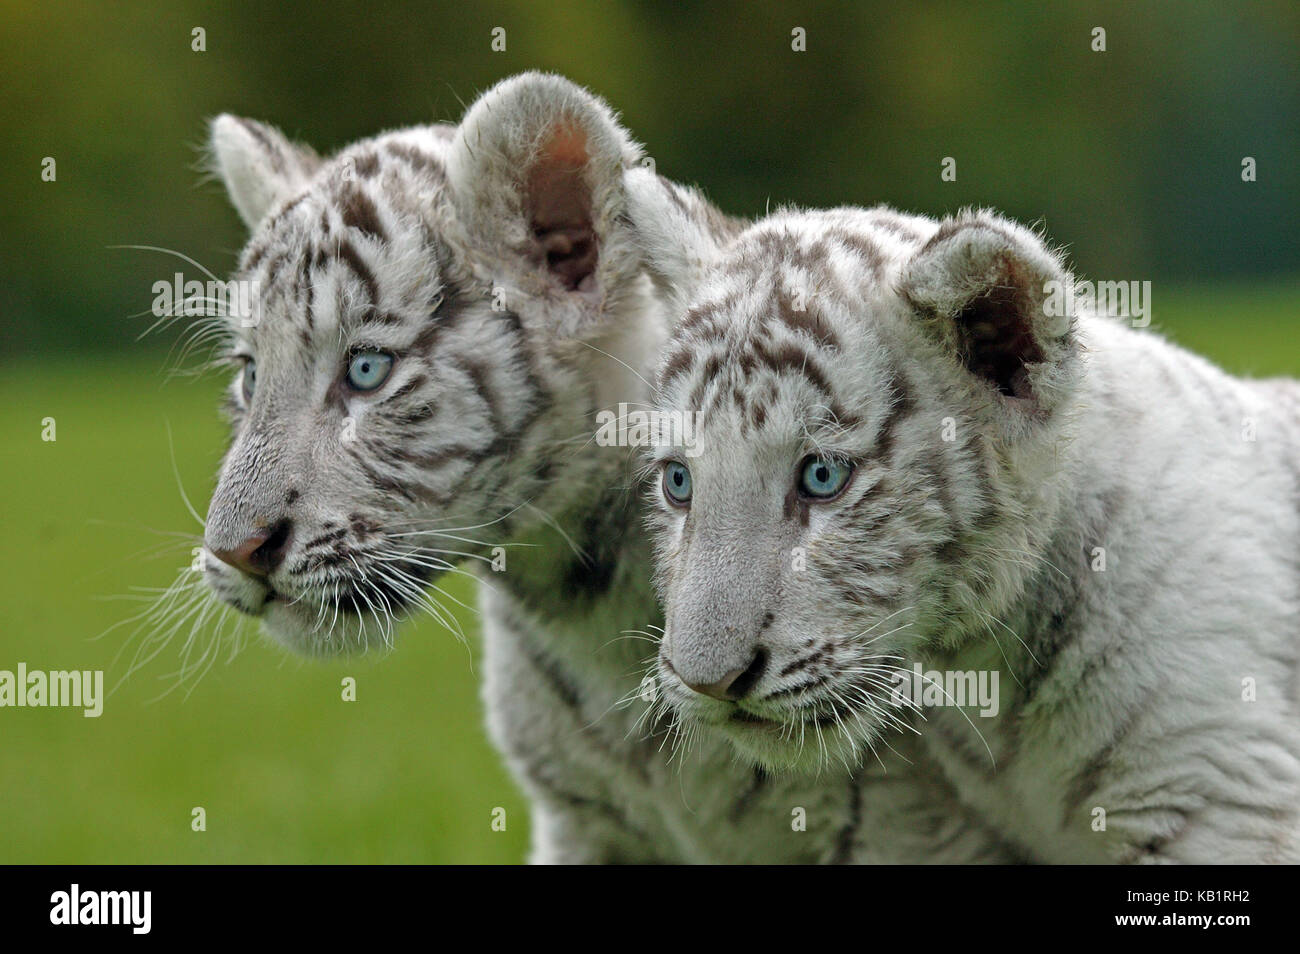 Los tigres blancos, Panthera tigris, dos animales jóvenes fuera, retrato, Foto de stock